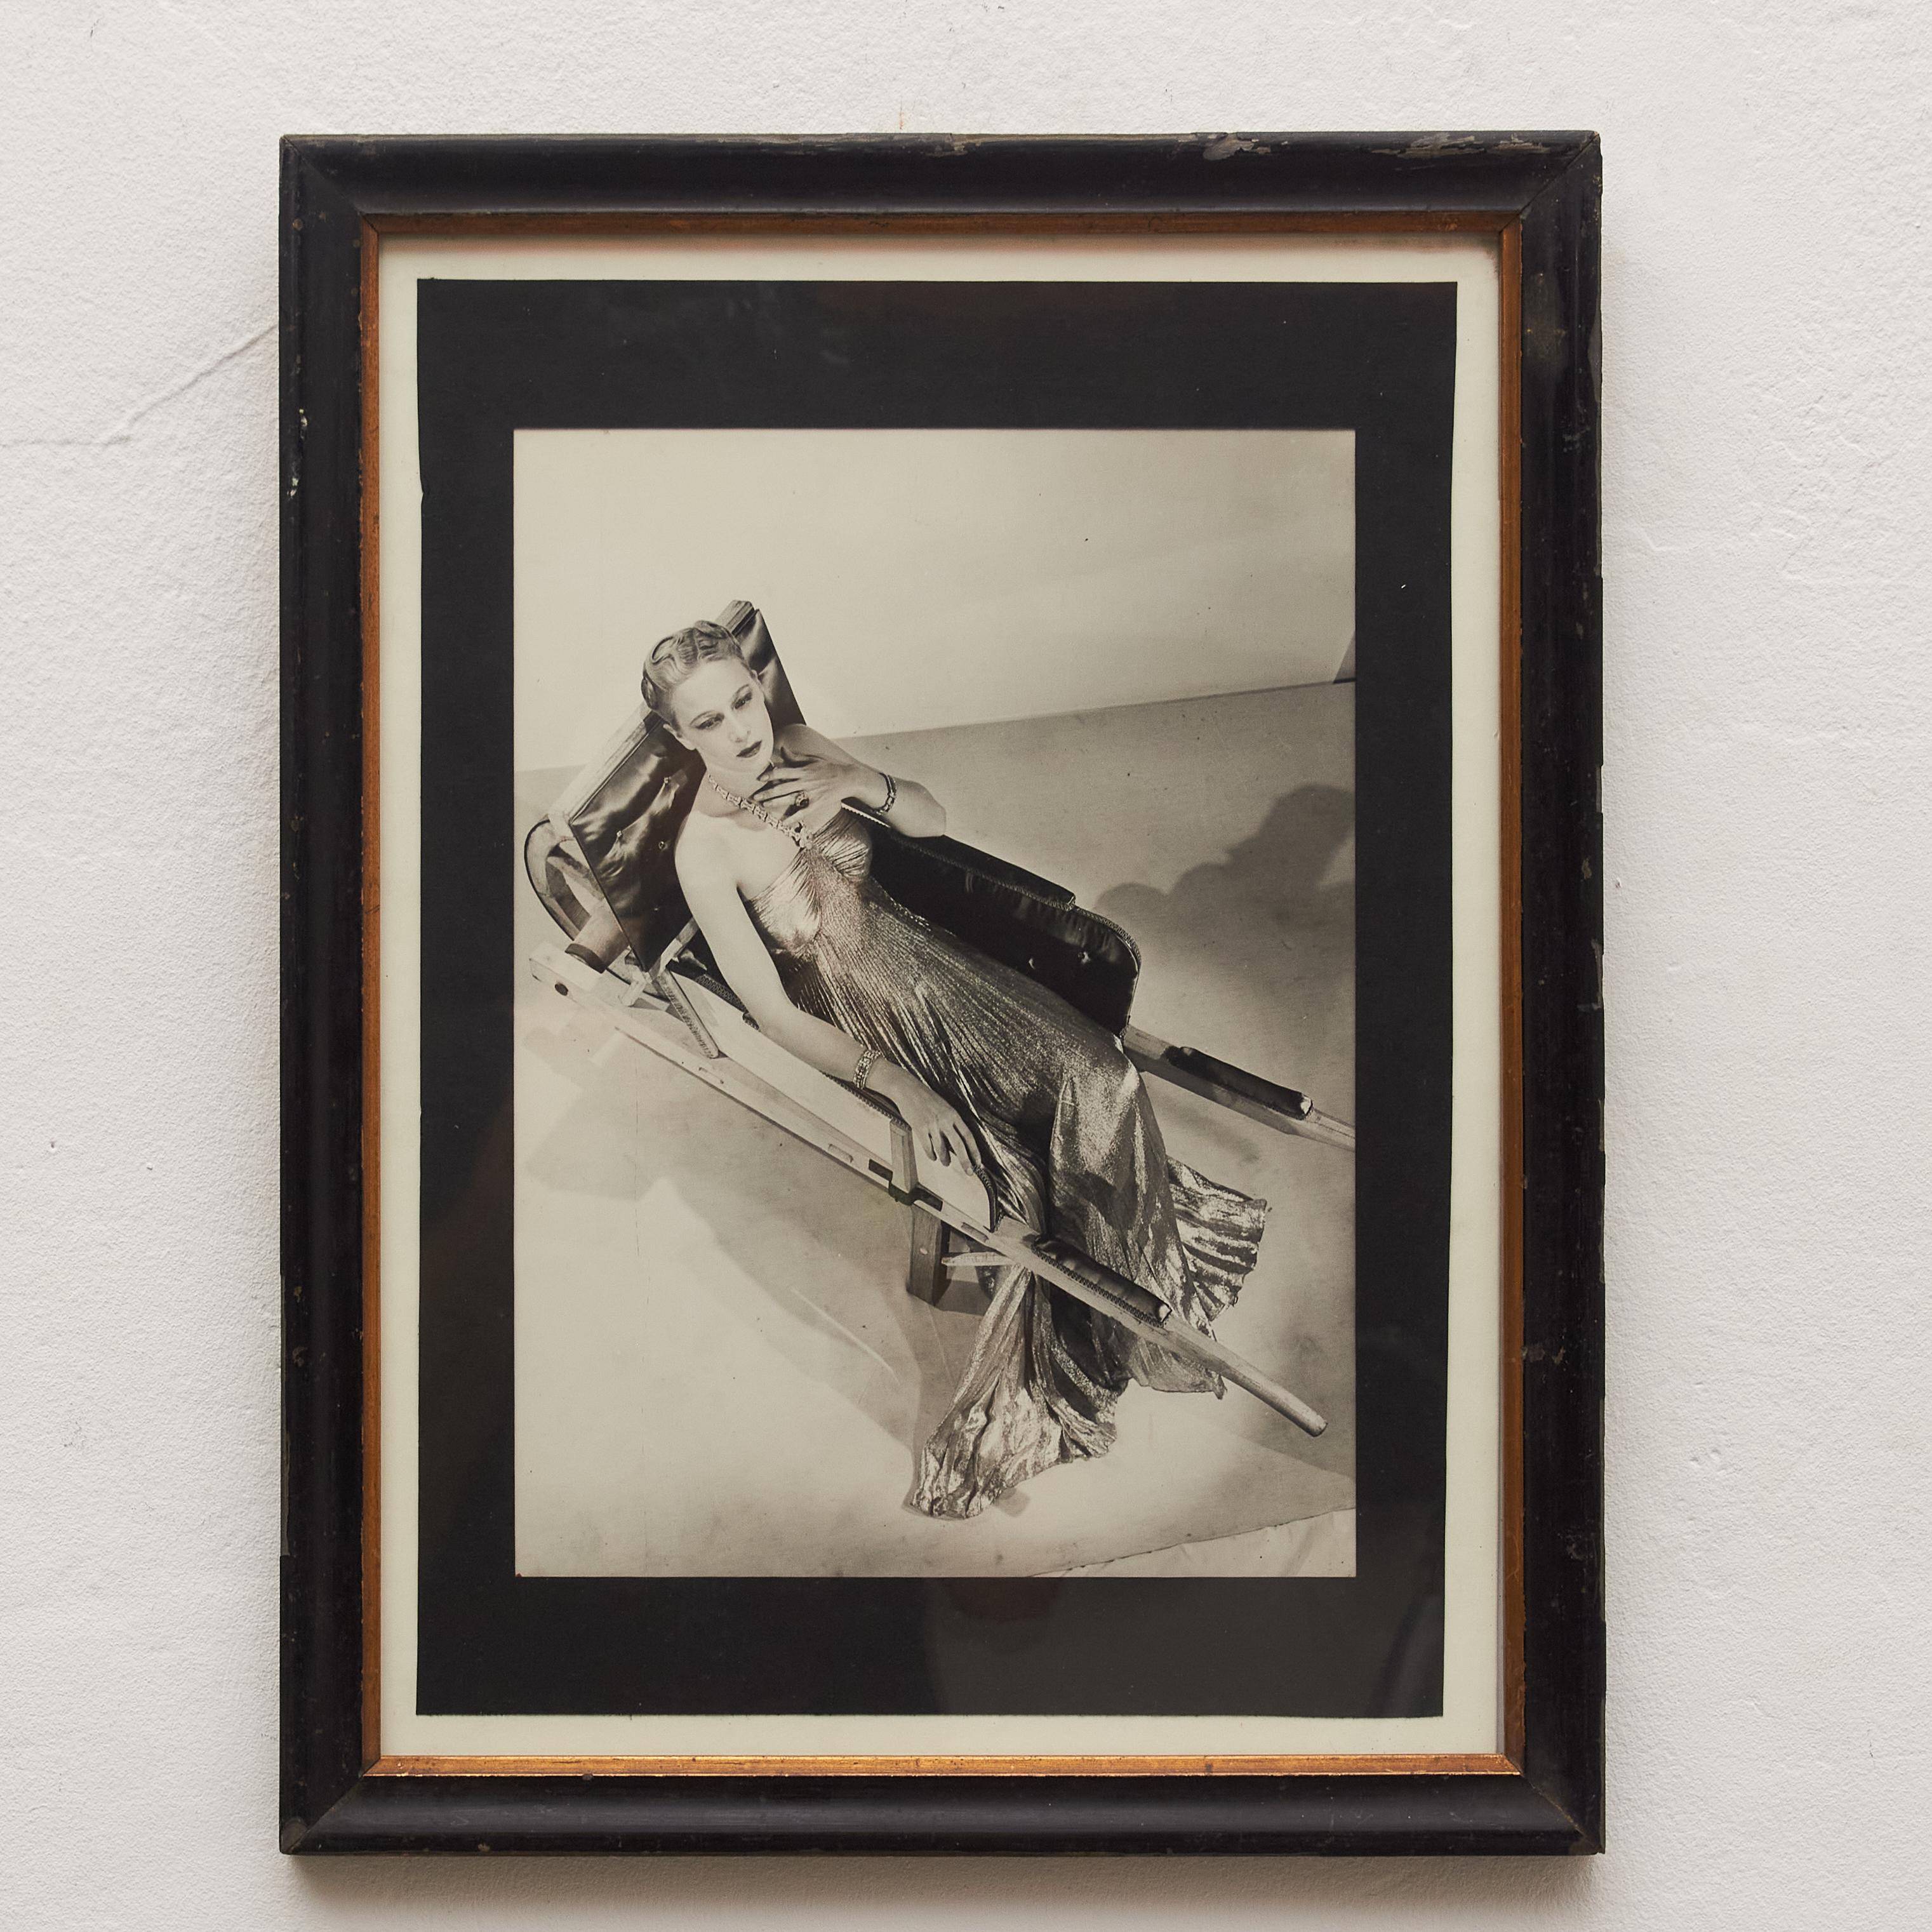 Entrez dans l'univers énigmatique de Man Ray, précurseur dans les domaines du DADA et du surréalisme, grâce à cette photographie exceptionnelle en noir et blanc. Soigneusement encadré dans un cadre du début du XXe siècle, ce chef-d'œuvre incarne